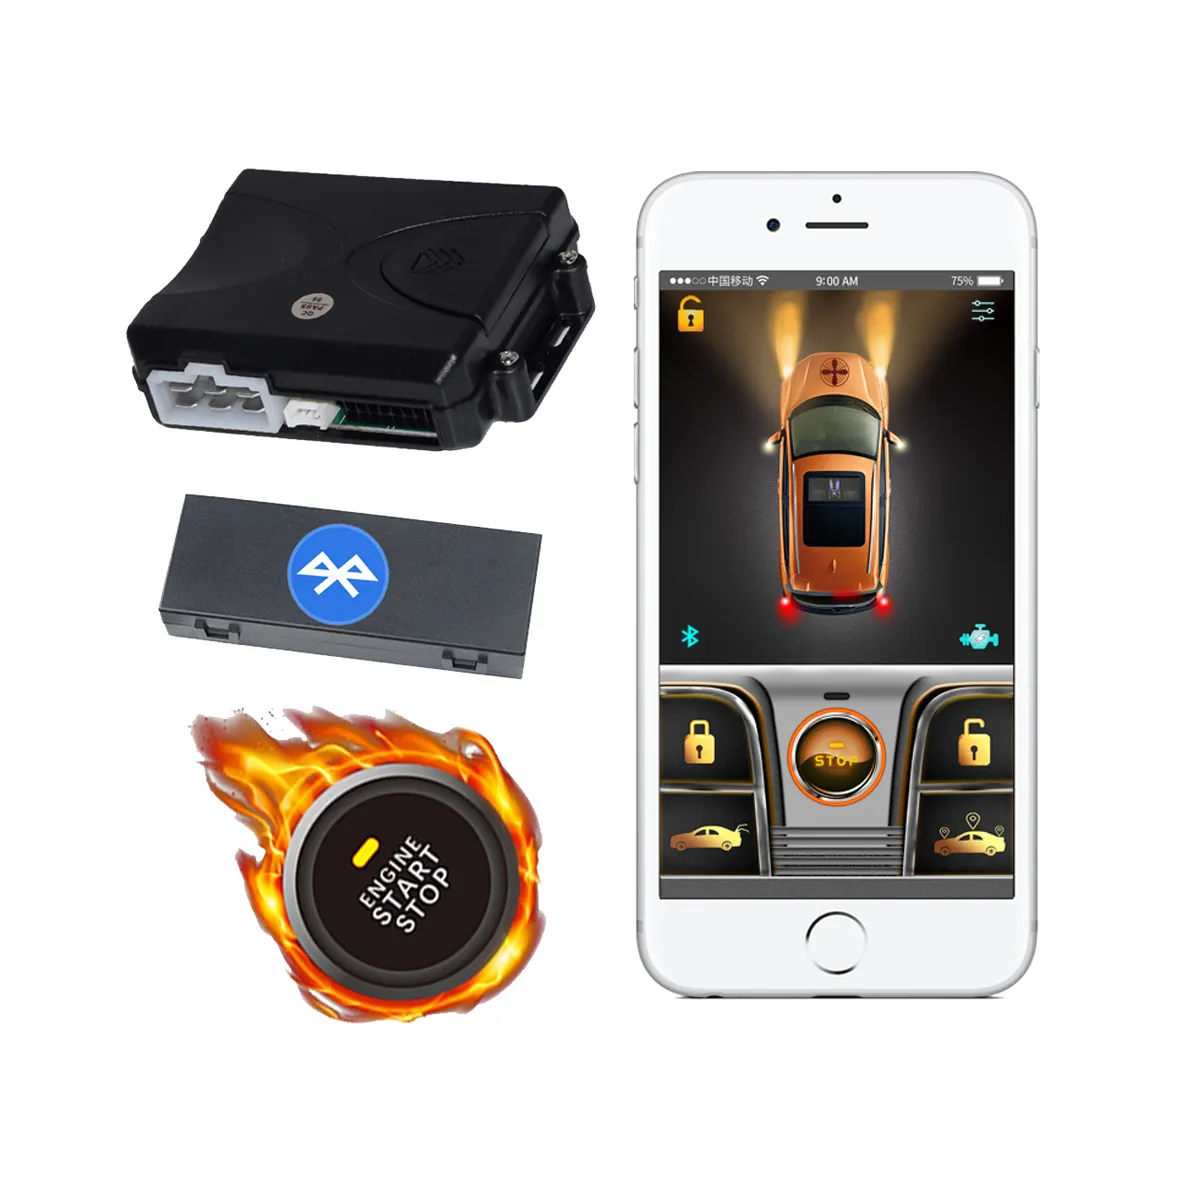 Прямая поставка, умная кнопка запуска и остановки KOL Cardot, Система бесключевого доступа Pke, цифровой ключ, управление через приложение, автомобильные сигналы